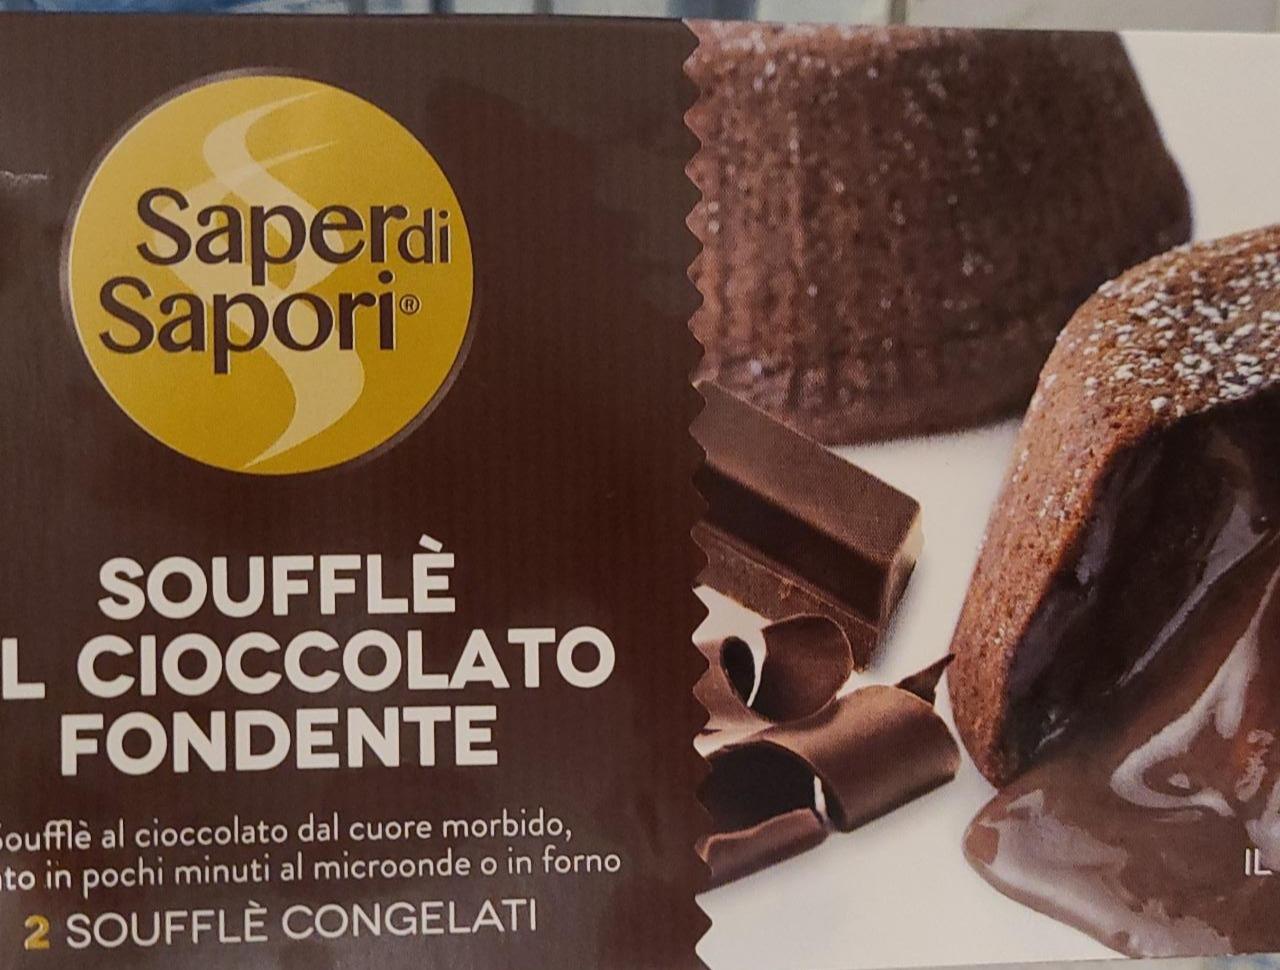 Fotografie - Soufflè al Cioccolato Fondente Saper di Sapori